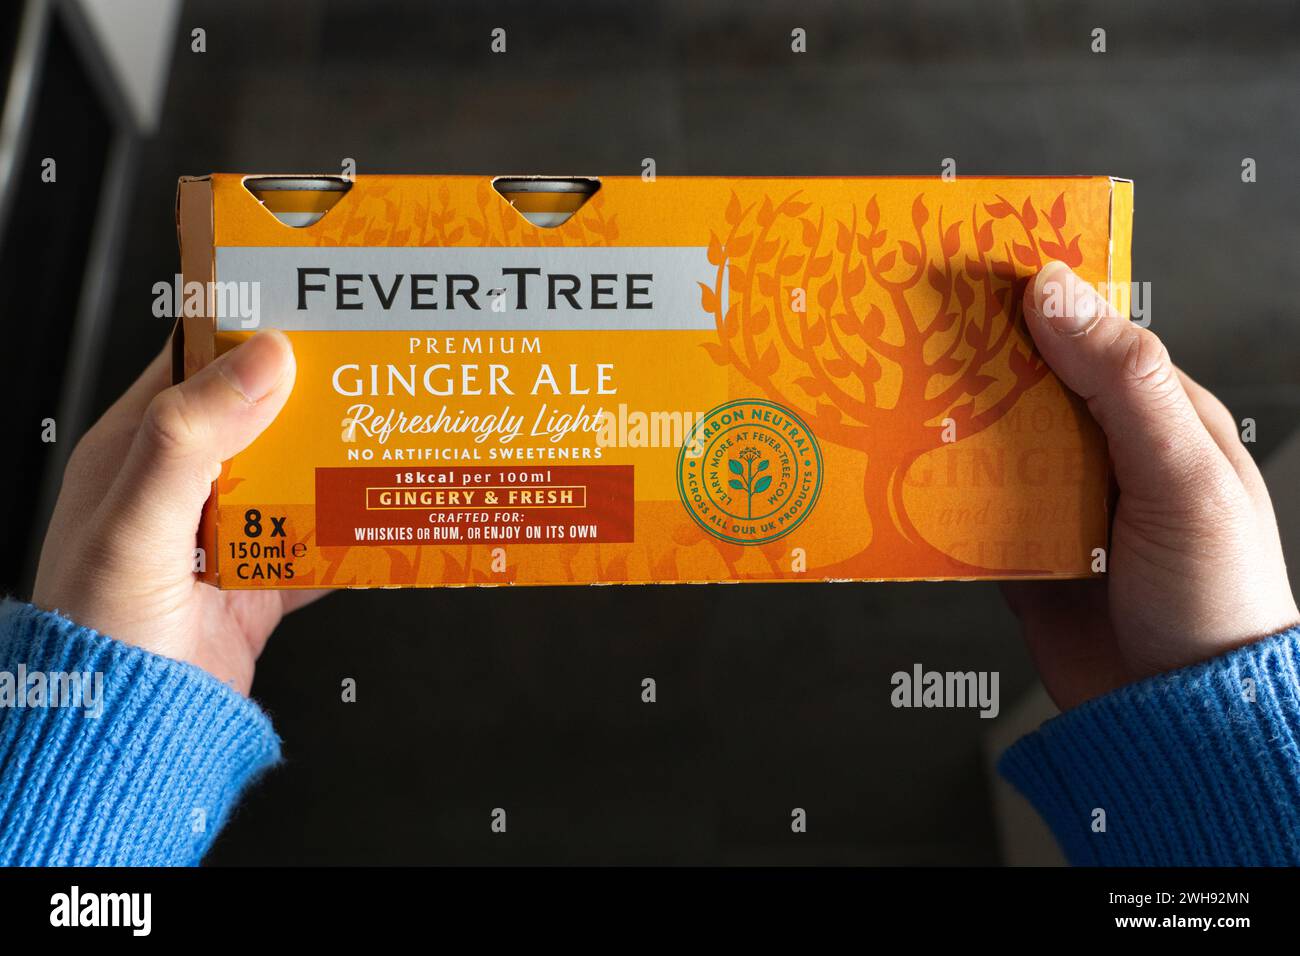 Una donna che tiene in mano una scatola di lattine di ginger ale premium Fever-Tree. Miscele di bevande premium di Fevertree Limited, una società britannica di bevande analcoliche. REGNO UNITO Foto Stock